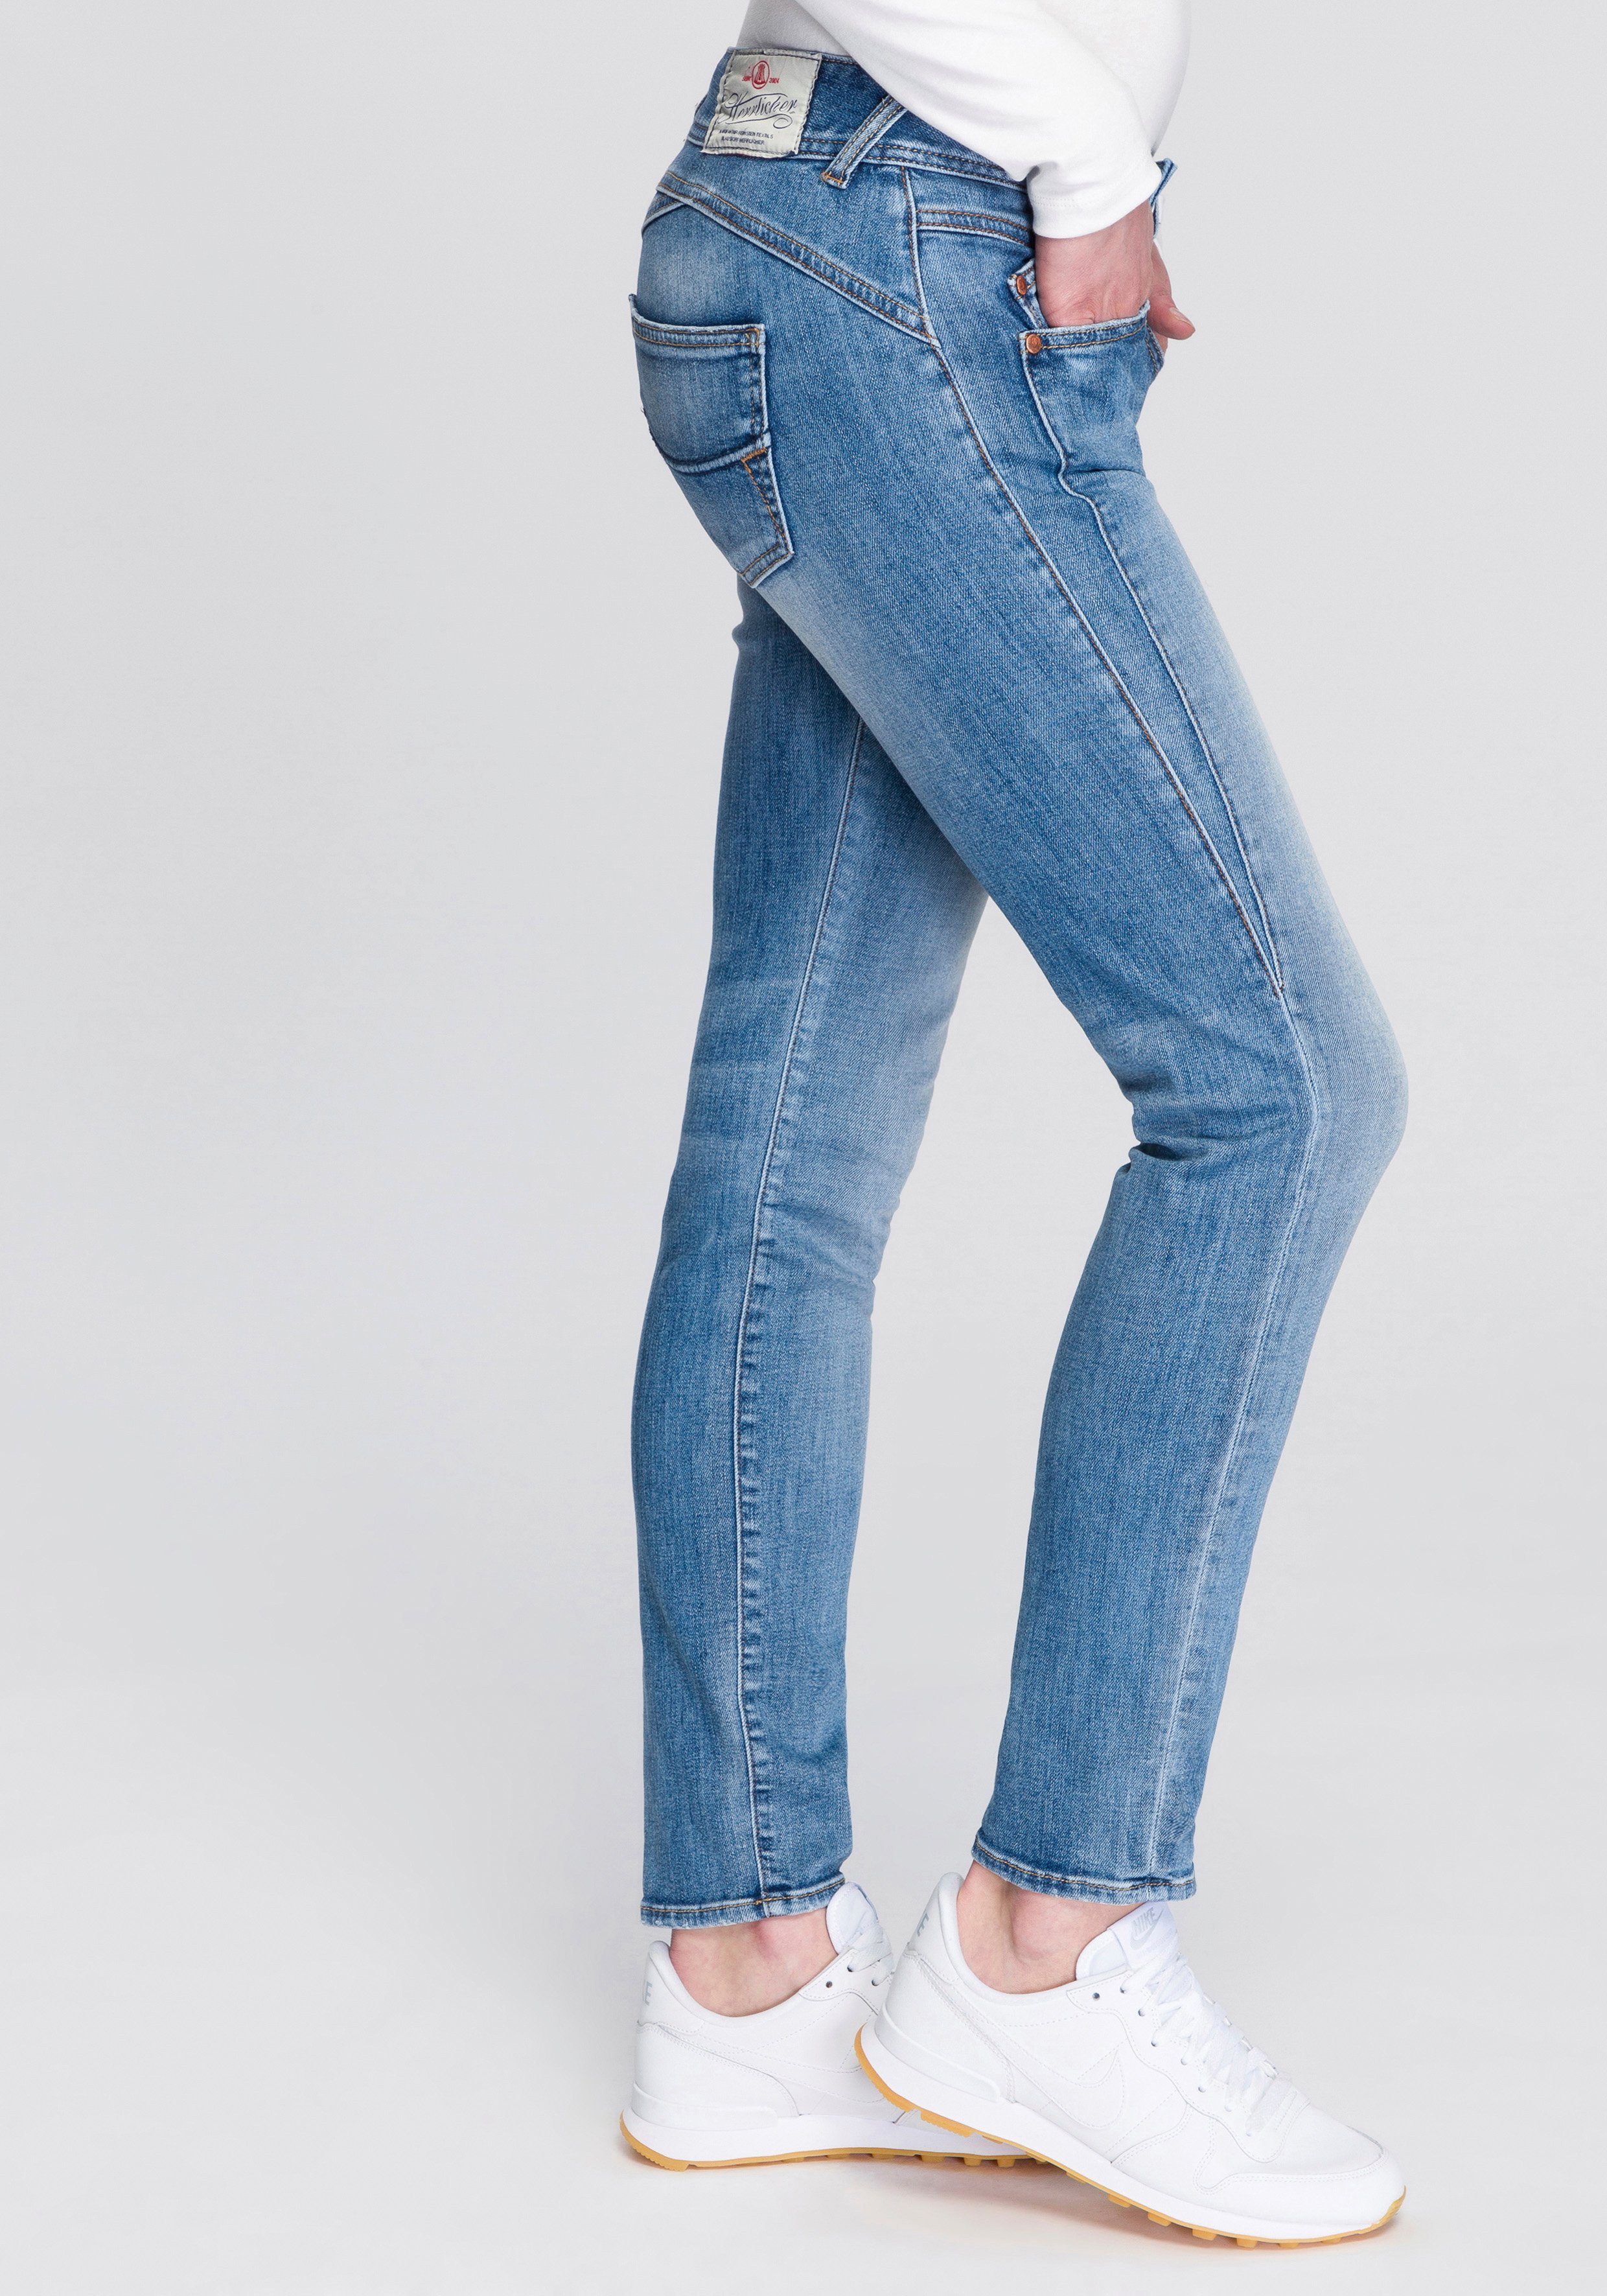 GILA dank Kitotex umweltfreundlich Herrlicher SLIM ORGANIC Slim-fit-Jeans an 5-Pocket-Style Backpockets Steppung mit toller den Technology,